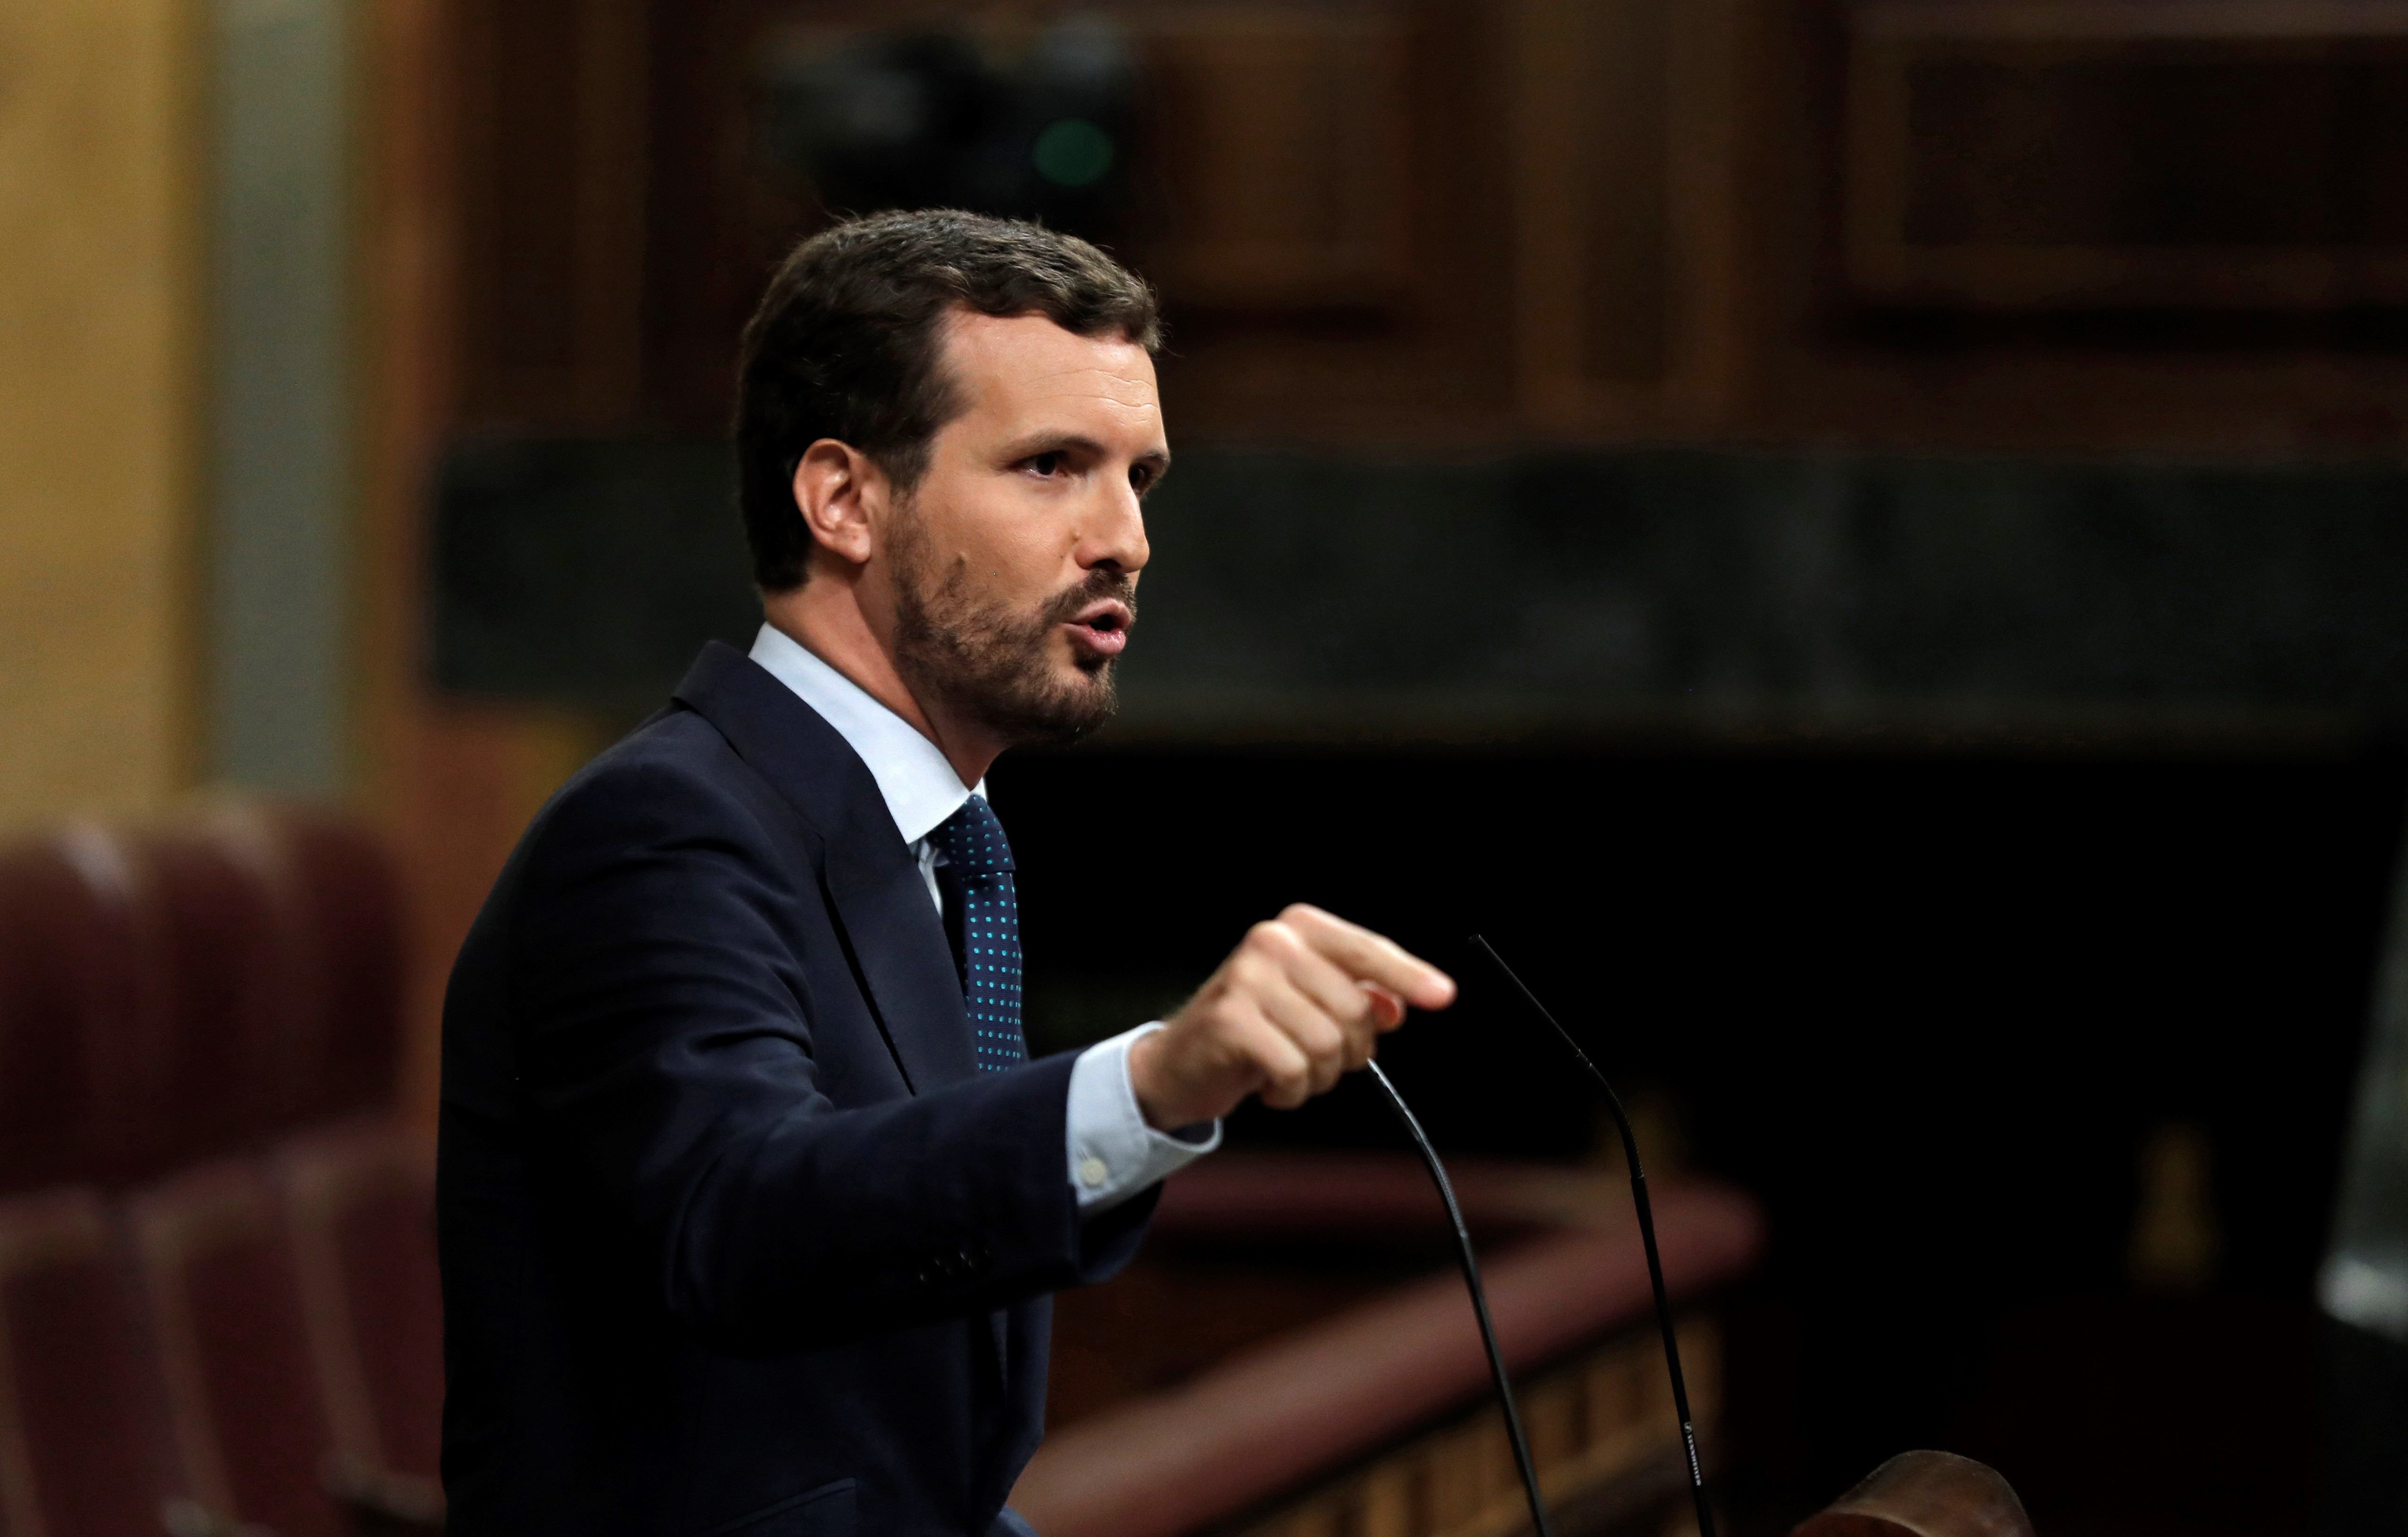 El PP passa la pilota al PSOE: “És Sánchez qui ha de respondre a Rivera"